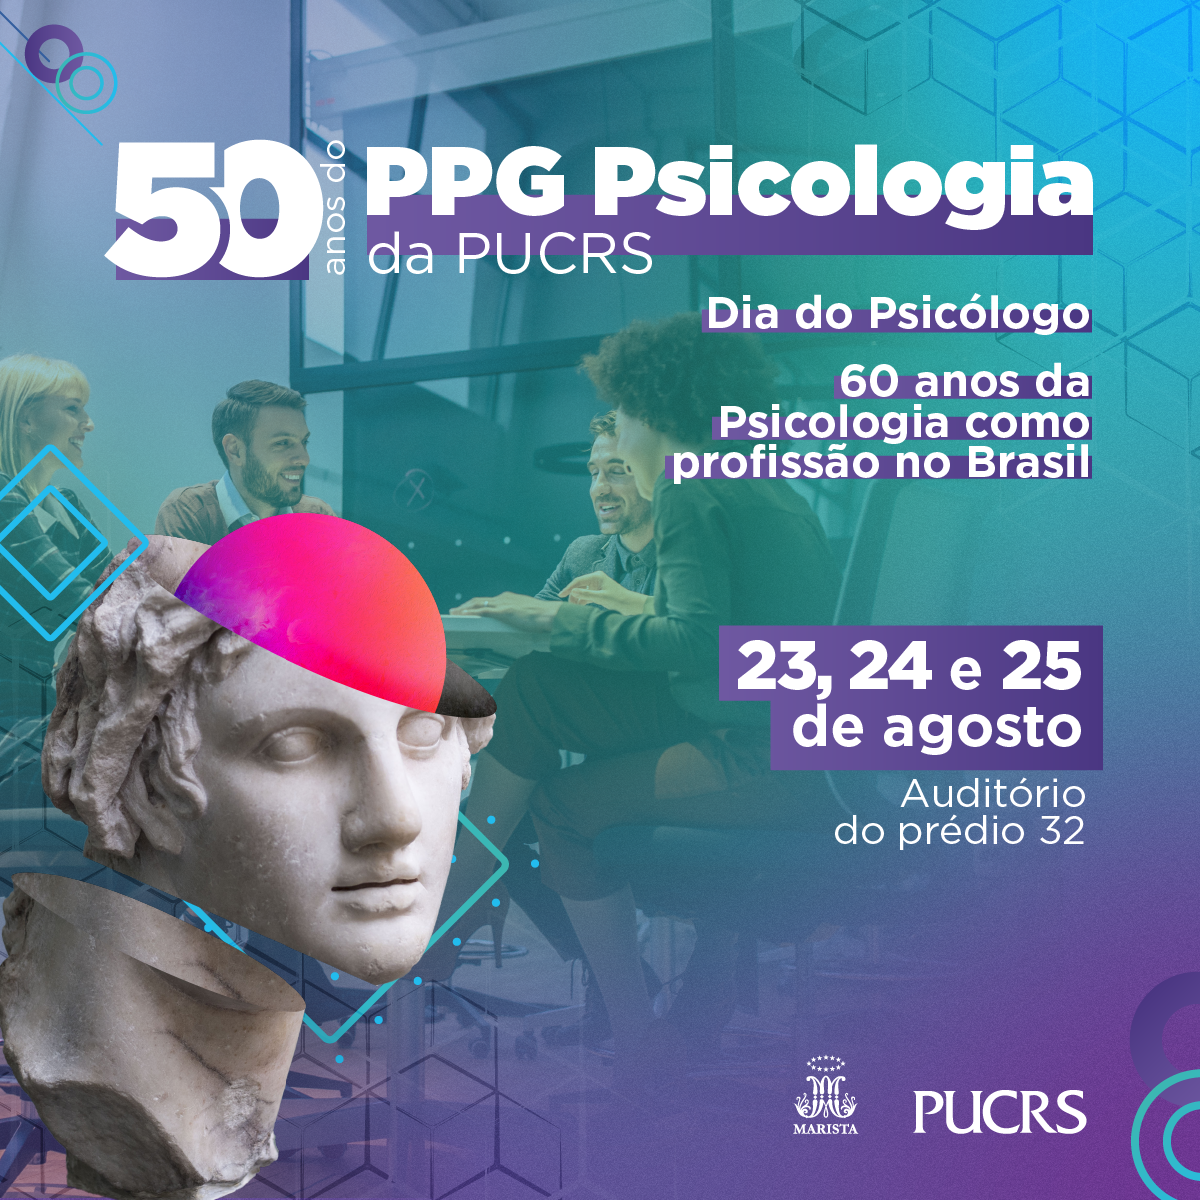 50 Anos do PPG Psicologia PUCRS, Dia do Psicologo e 60 Anos da Profissão no Brasil